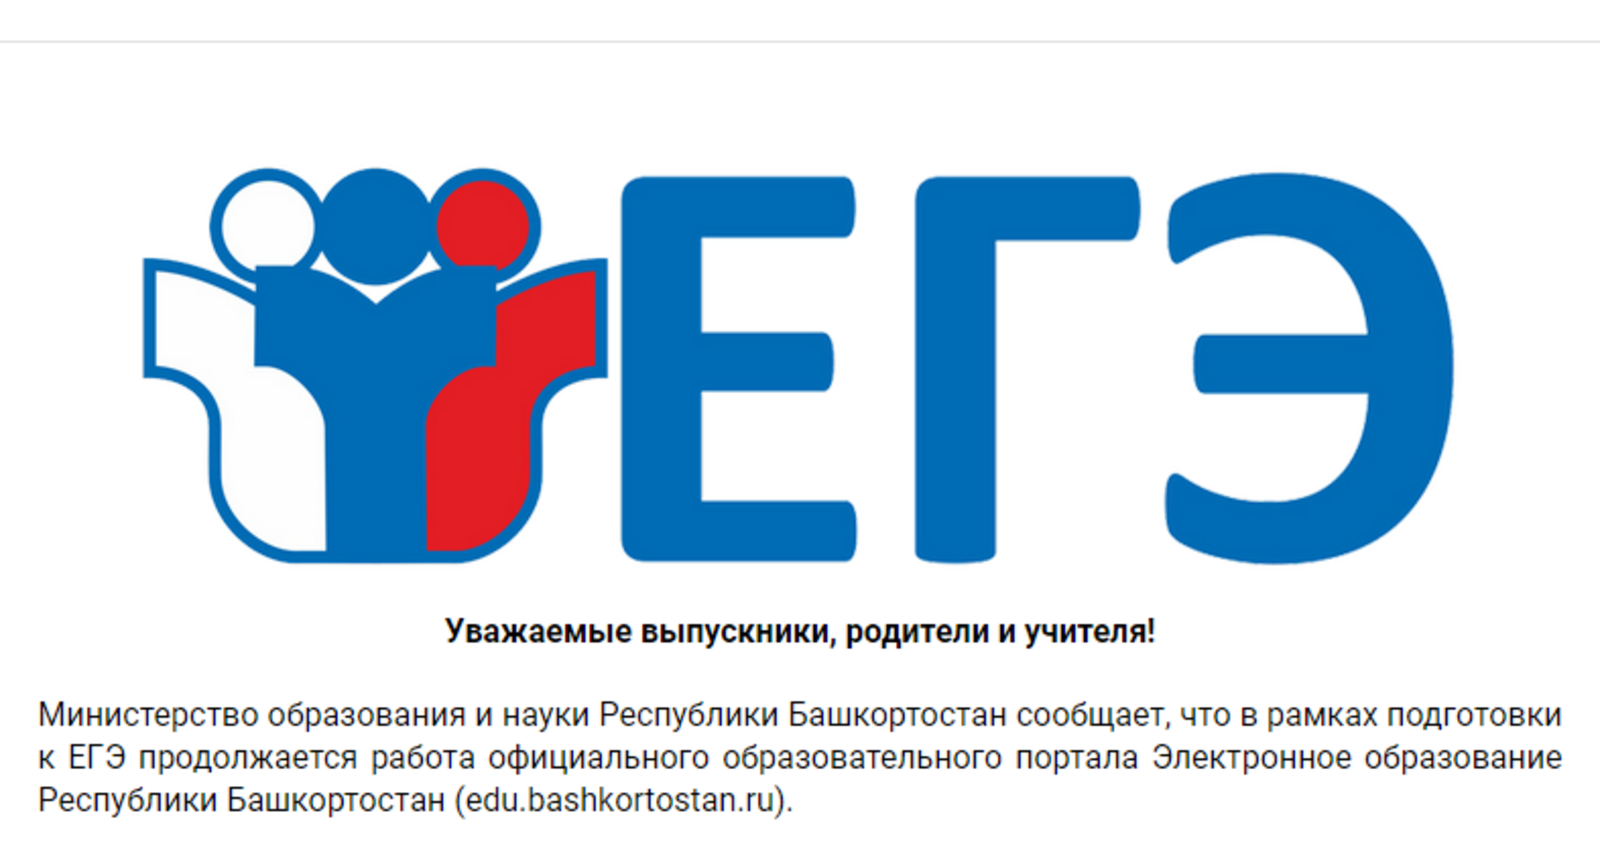 В Башкортостане стартовала серия бесплатных онлайн-консультаций для подготовки к ЕГЭ и ОГЭ